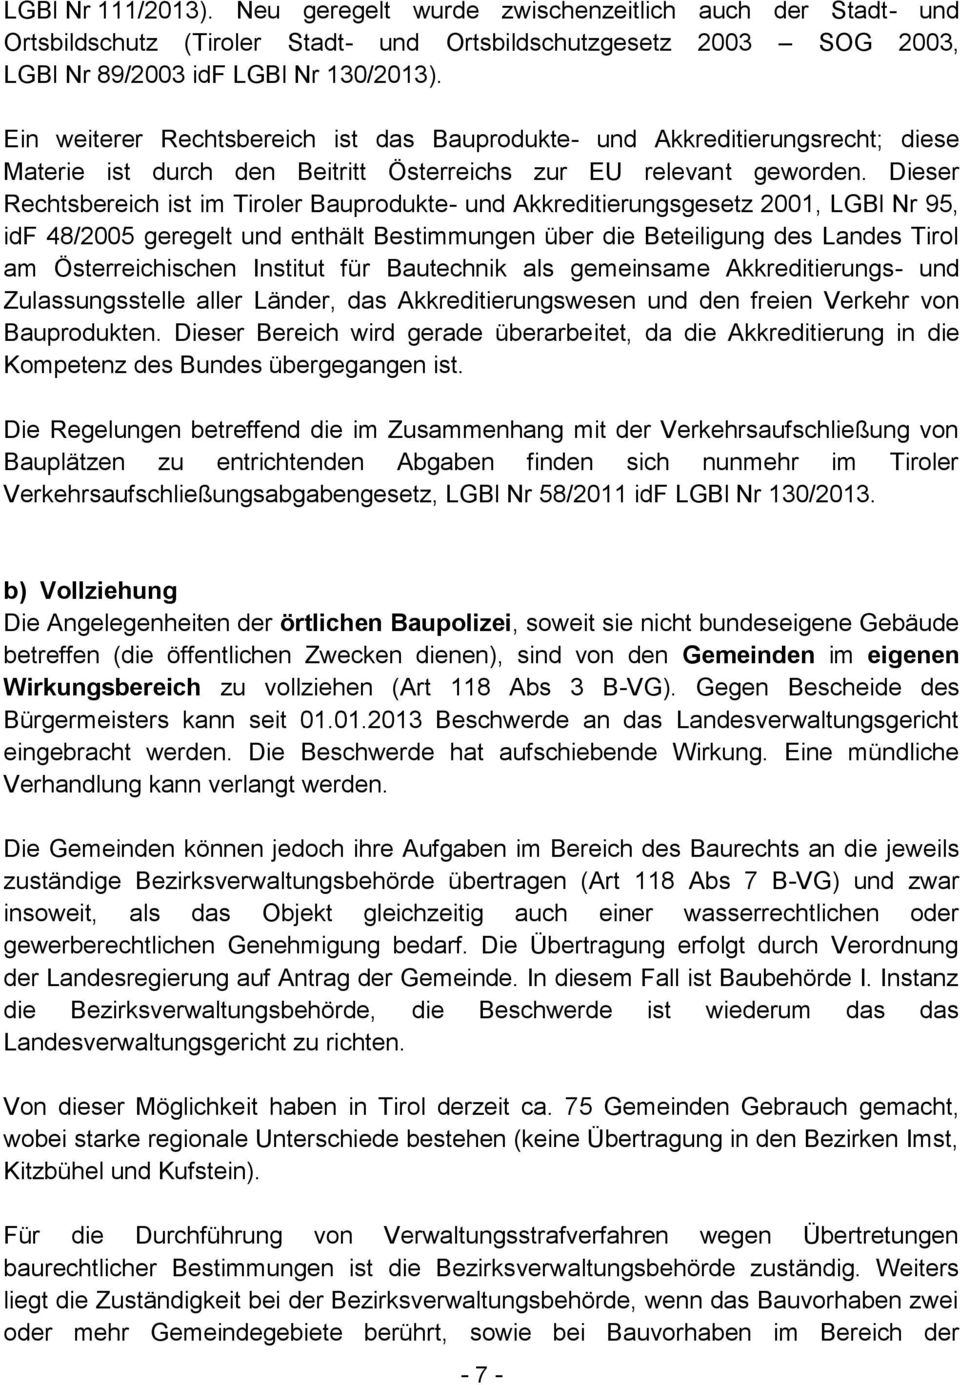 Dieser Rechtsbereich ist im Tiroler Bauprodukte- und Akkreditierungsgesetz 2001, LGBl Nr 95, idf 48/2005 geregelt und enthält Bestimmungen über die Beteiligung des Landes Tirol am Österreichischen